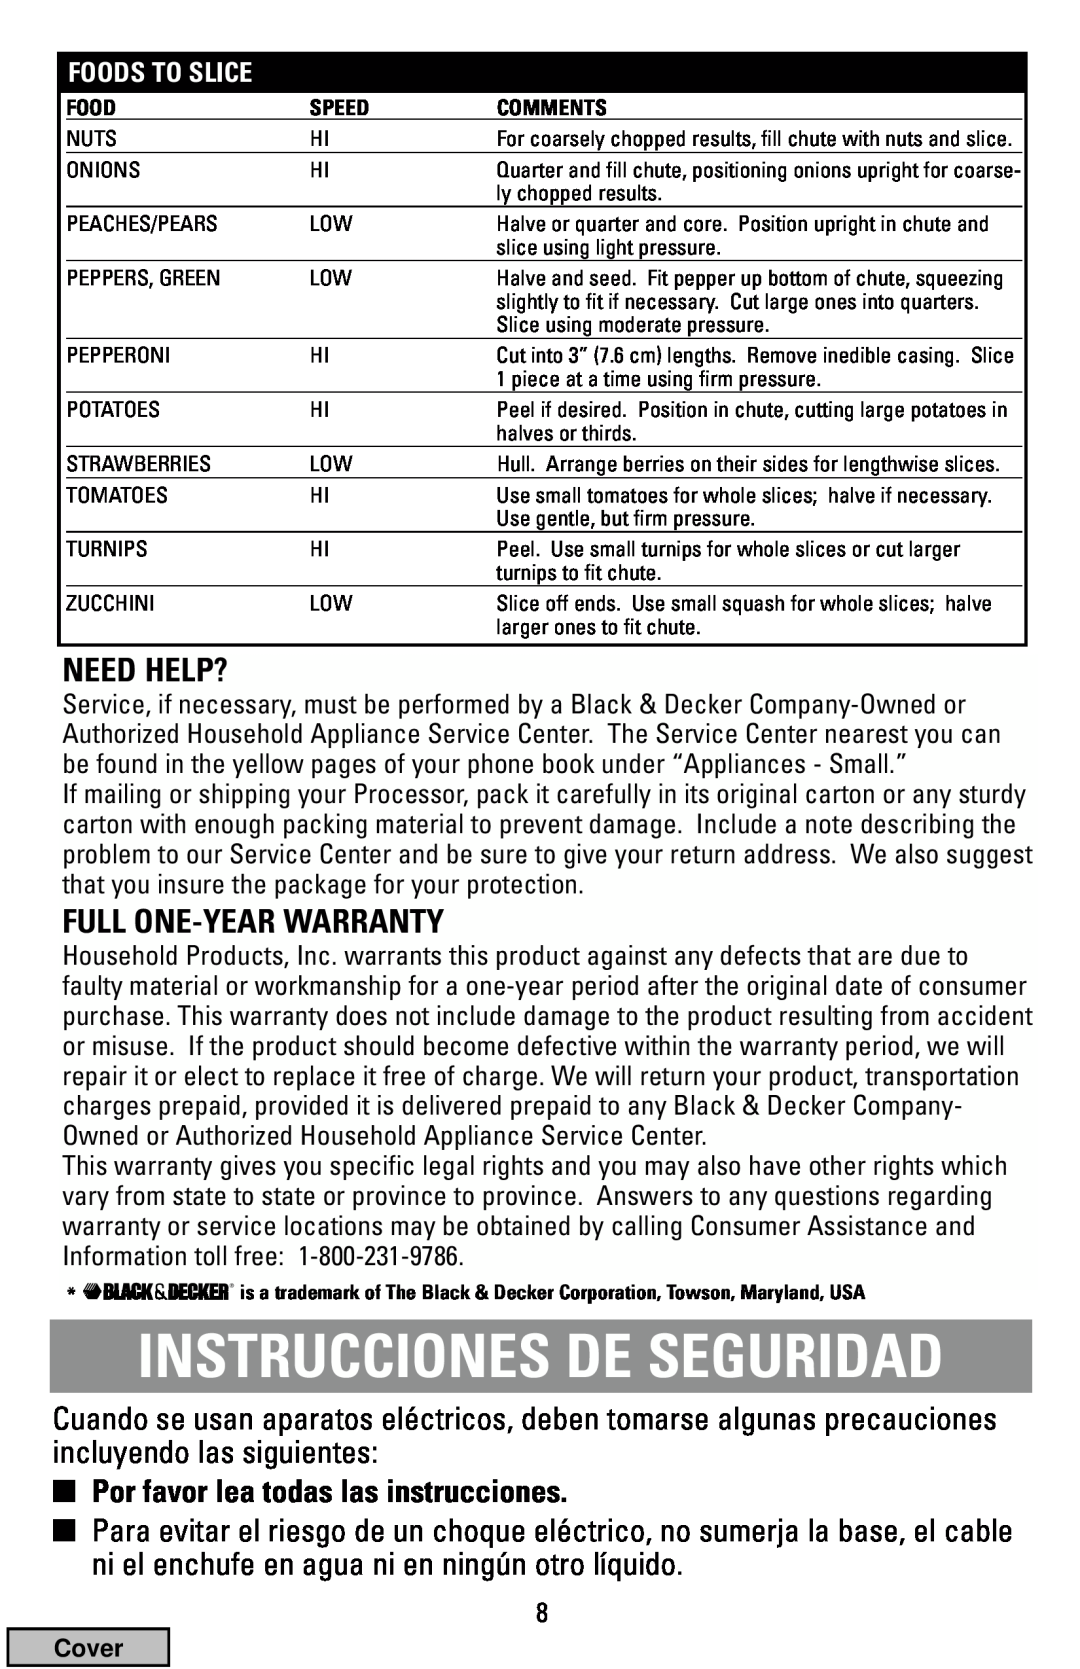 Black & Decker FP1200 manual Instrucciones De Seguridad, Need Help?, Full One-Year Warranty 